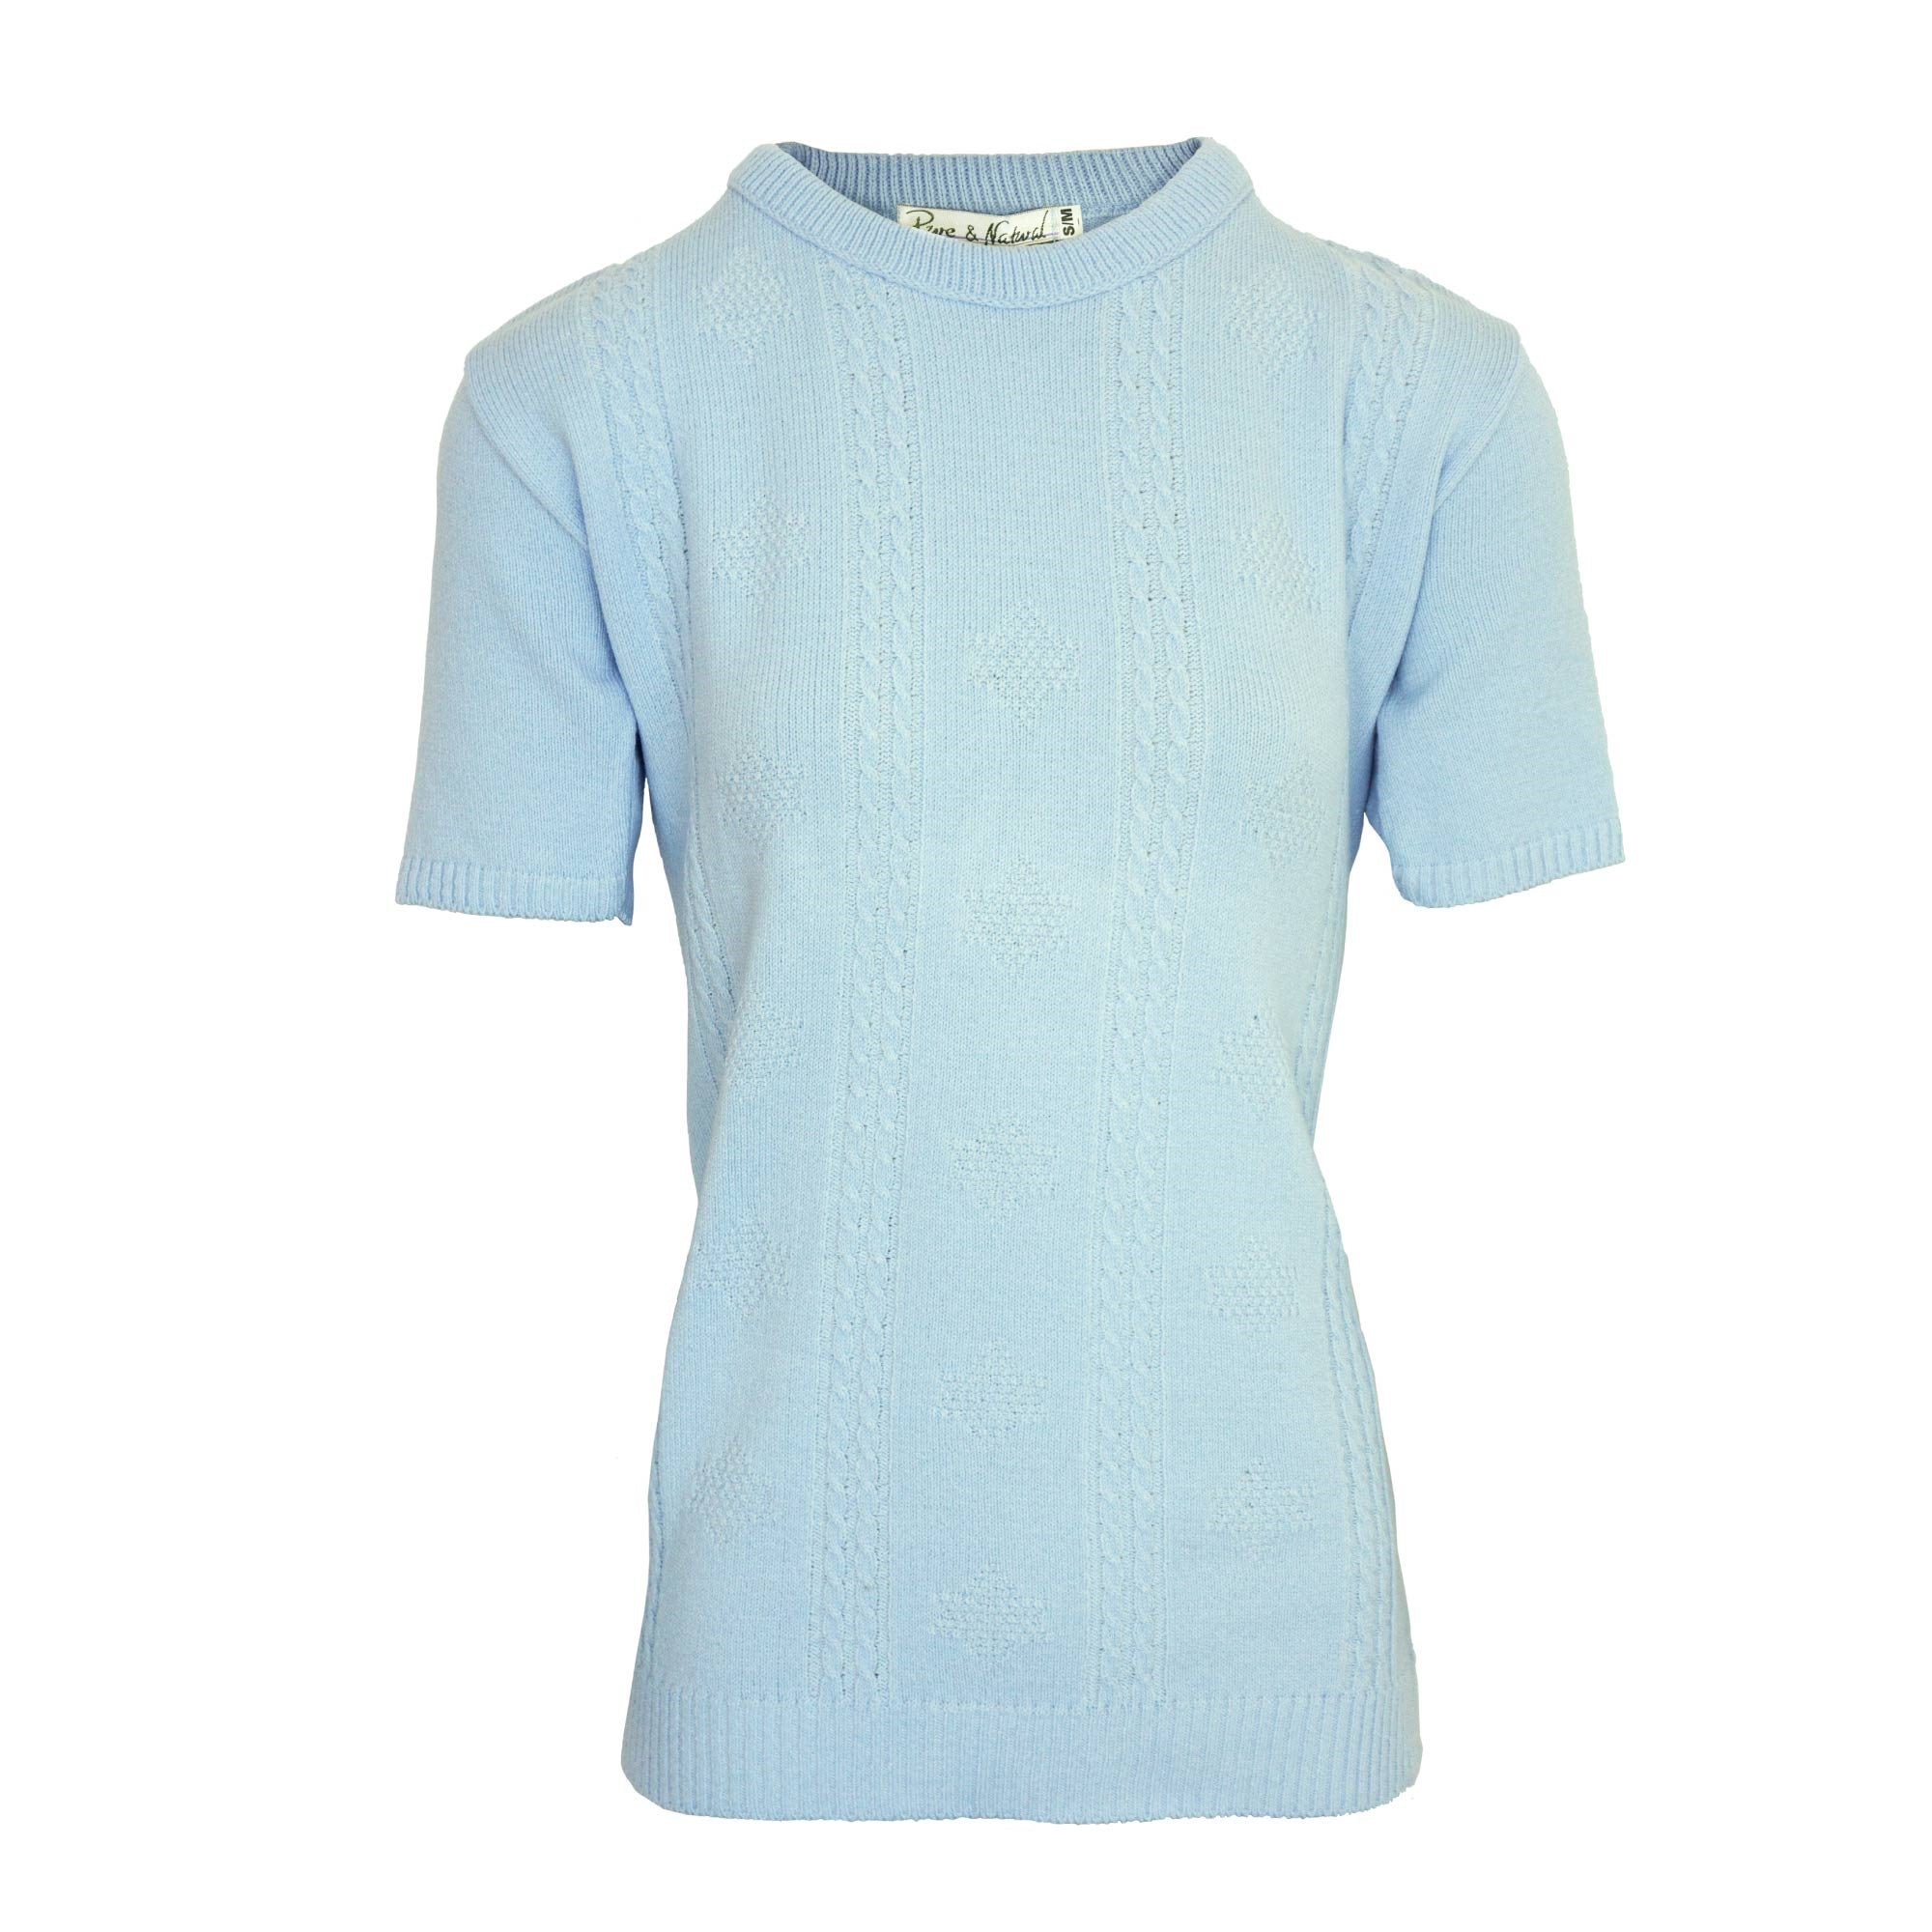 Ladies Cable Front Sweater - Light Blue - M/L / Light Blue - TJ Hughes